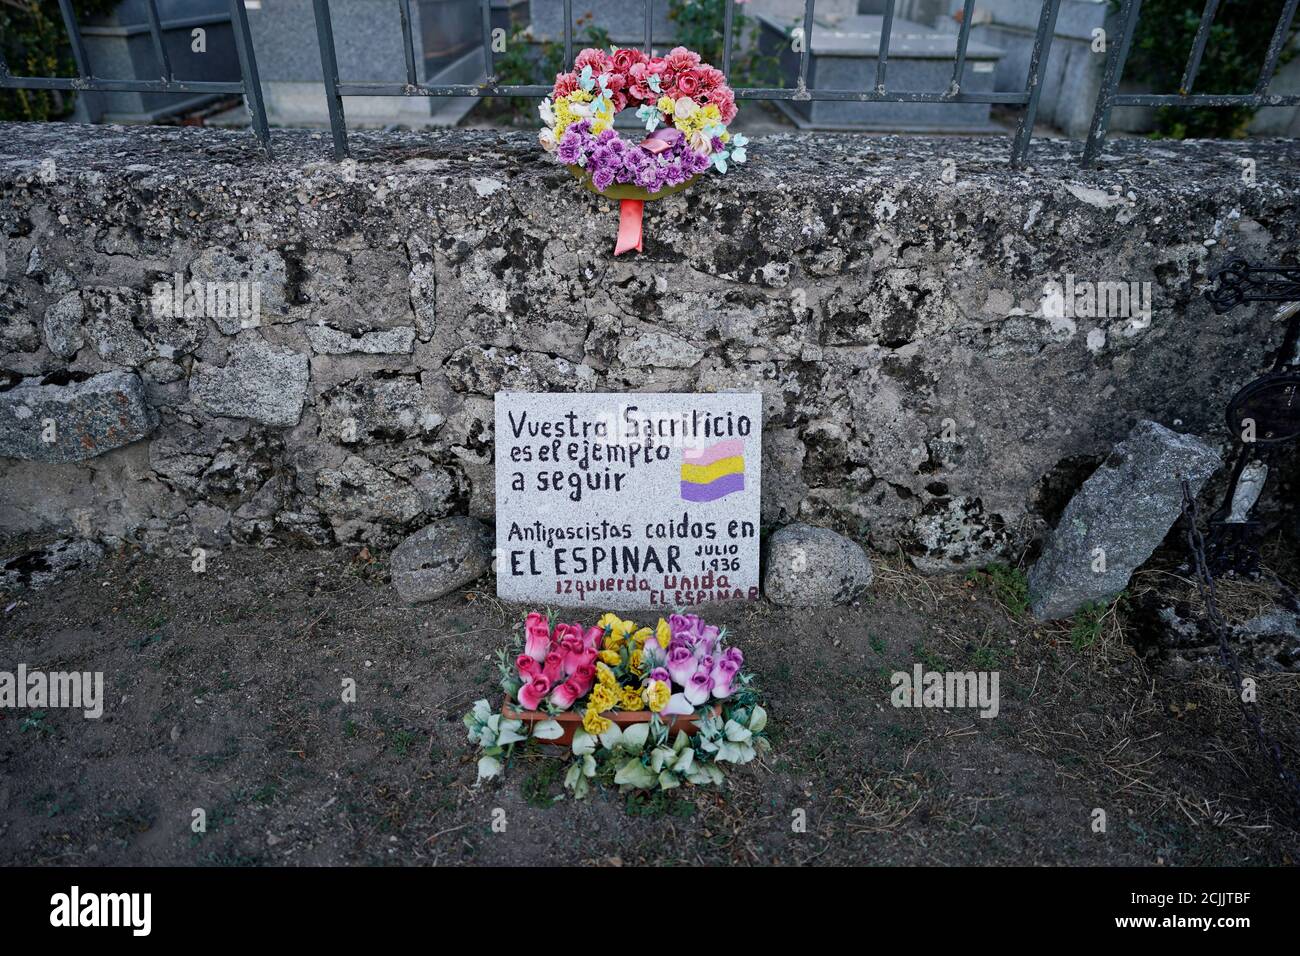 Una fosa común que contiene los restos de Eugenio Insua, una de las 17 personas que fueron asesinadas por las fuerzas del dictador Francisco Franco en julio de 1936, es vista antes de la exhumación por la Asociación para la recuperación de la memoria histórica (ARMH) en el cementerio el Espinar, España 31 de agosto, 2020. Foto tomada el 31 de agosto de 2020. La lápida dice: "Tu sacrificio es el ejemplo a seguir. Antifascistas que cayeron en el Espinar en julio de 1936". REUTERS/Juan Medina Foto de stock